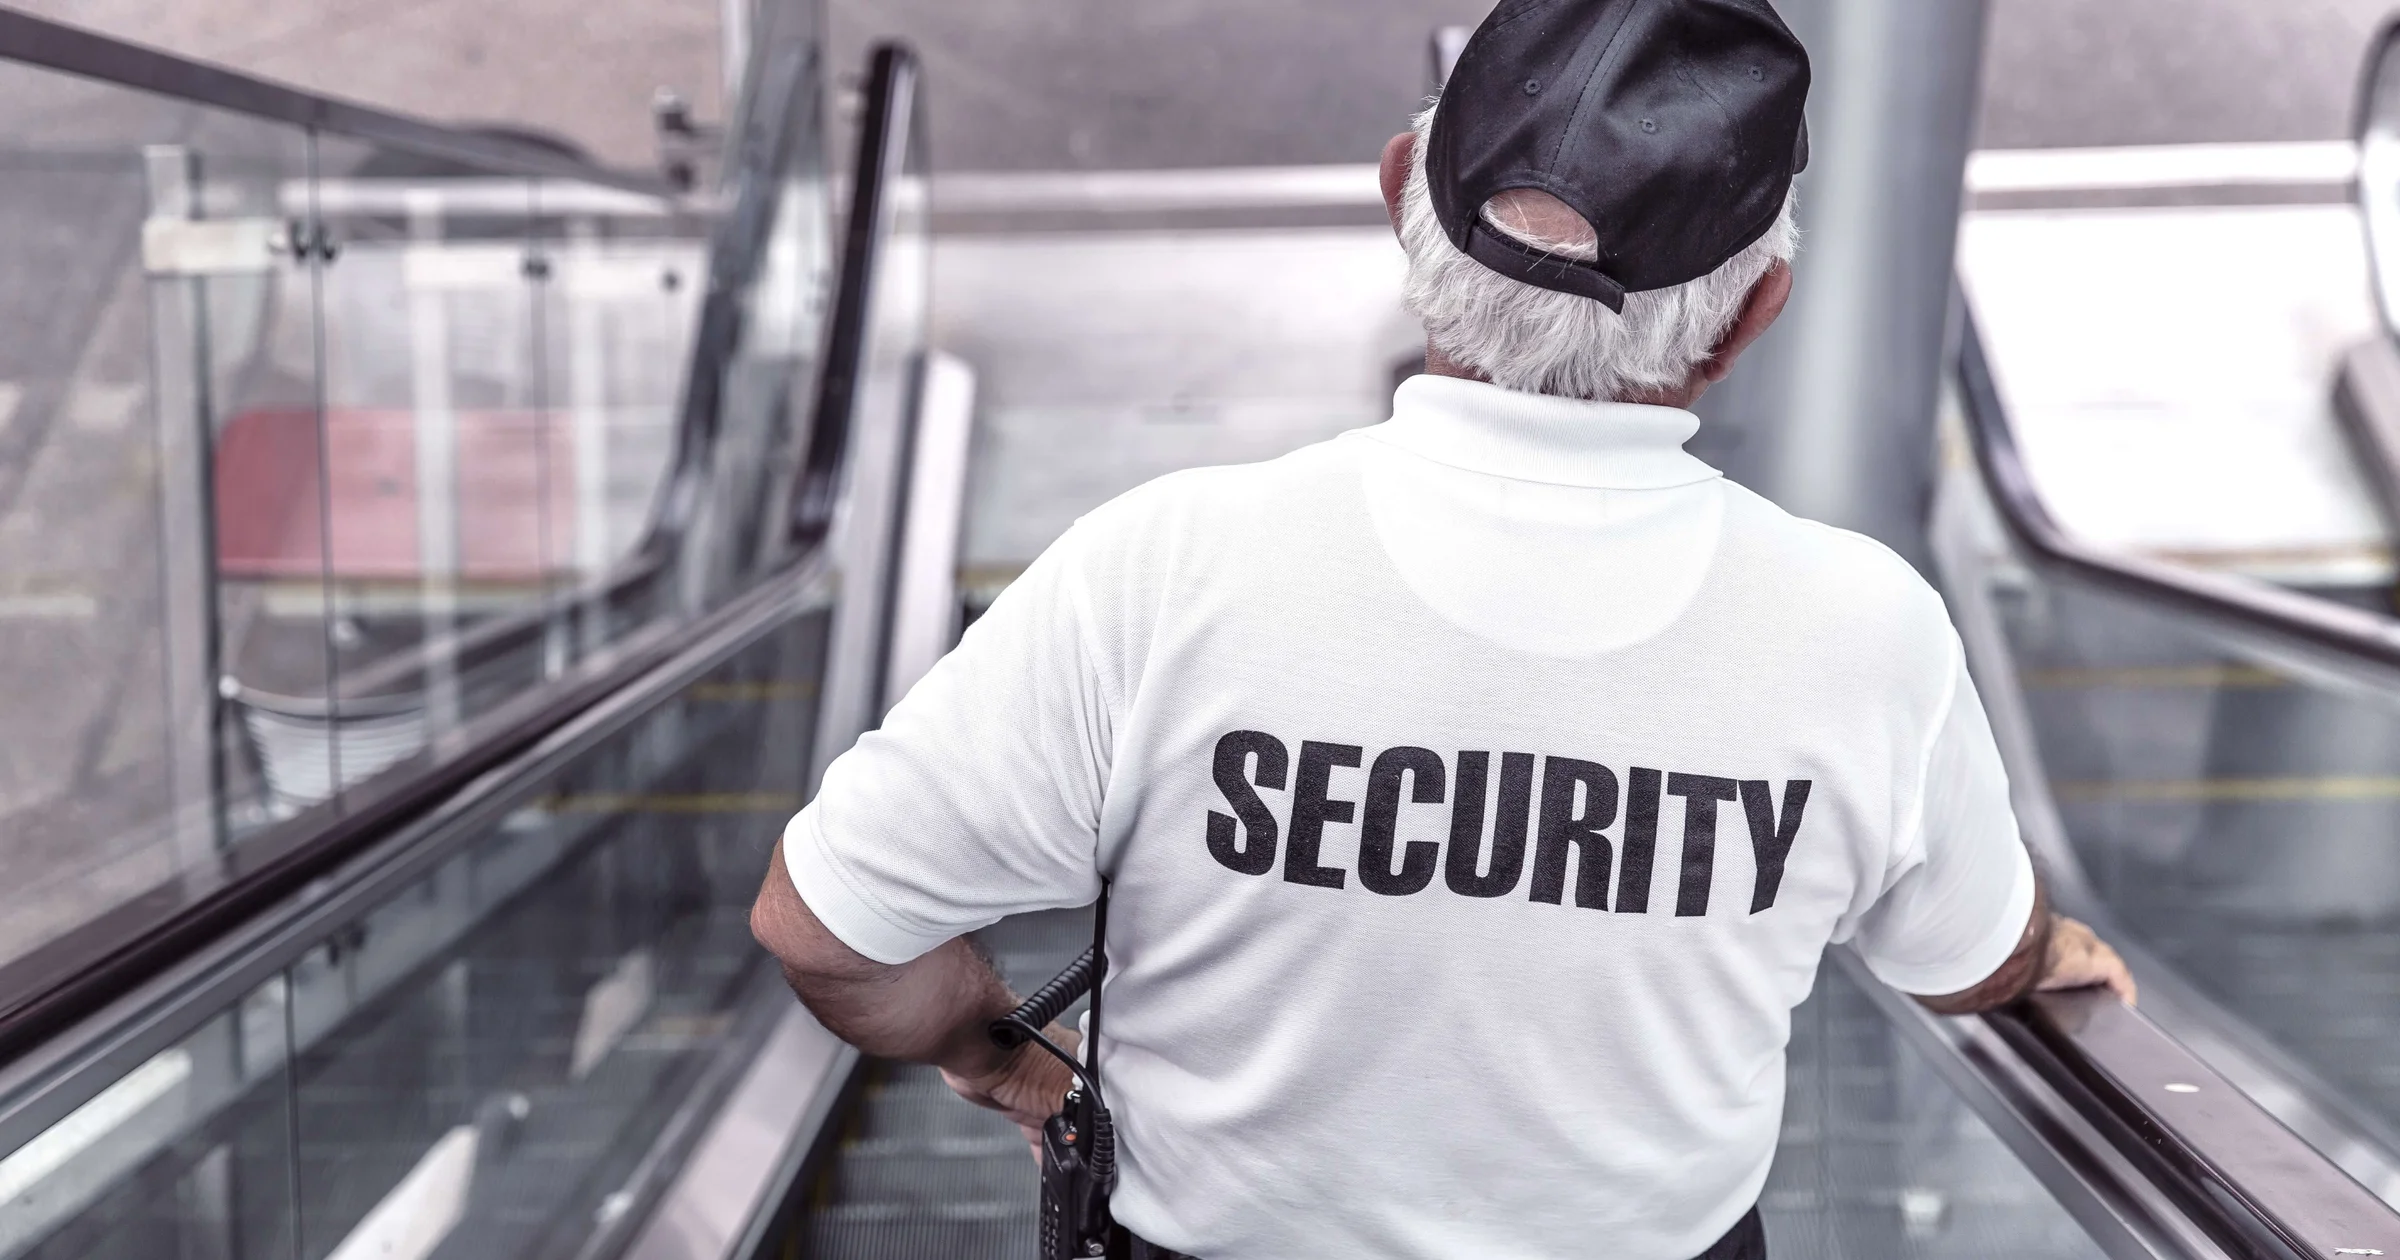 unarmed security guard job description 5760x3840 20201116 - Click42